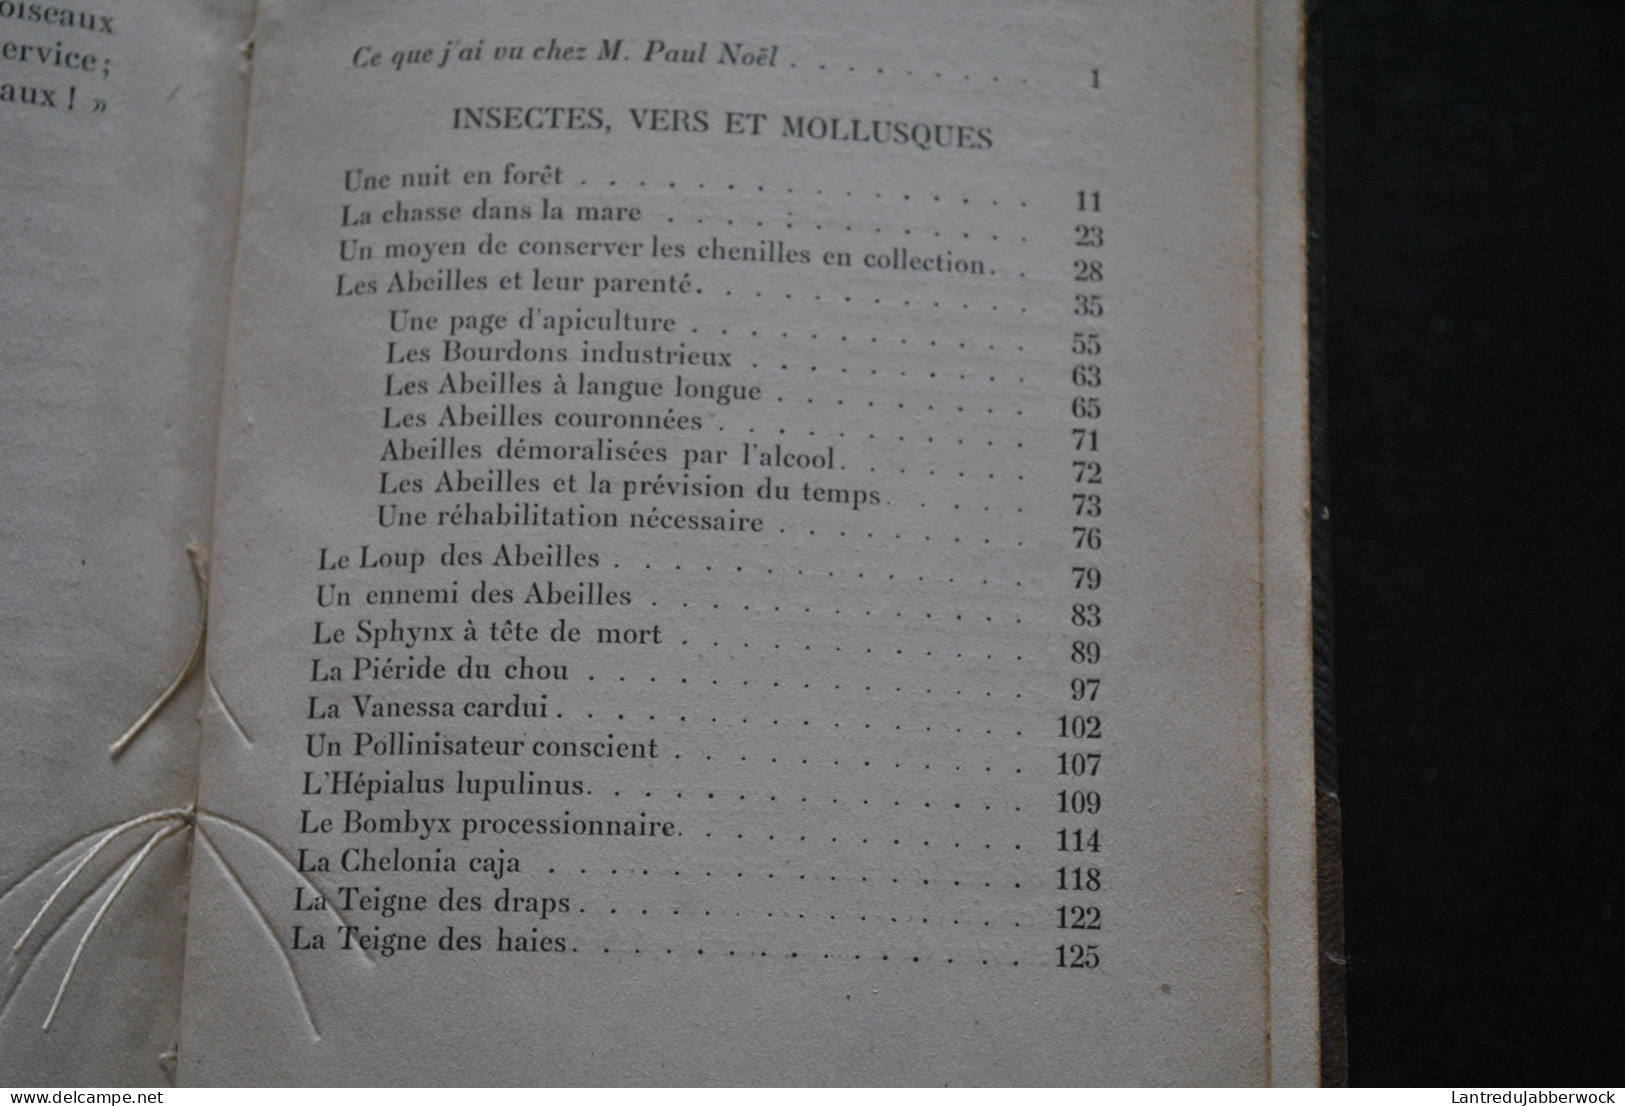 Paul NOEL Ce que j'ai vu chez les bêtes zoologie entomologie herpétologie insectes vers batraciens reptiles oiseaux 1913